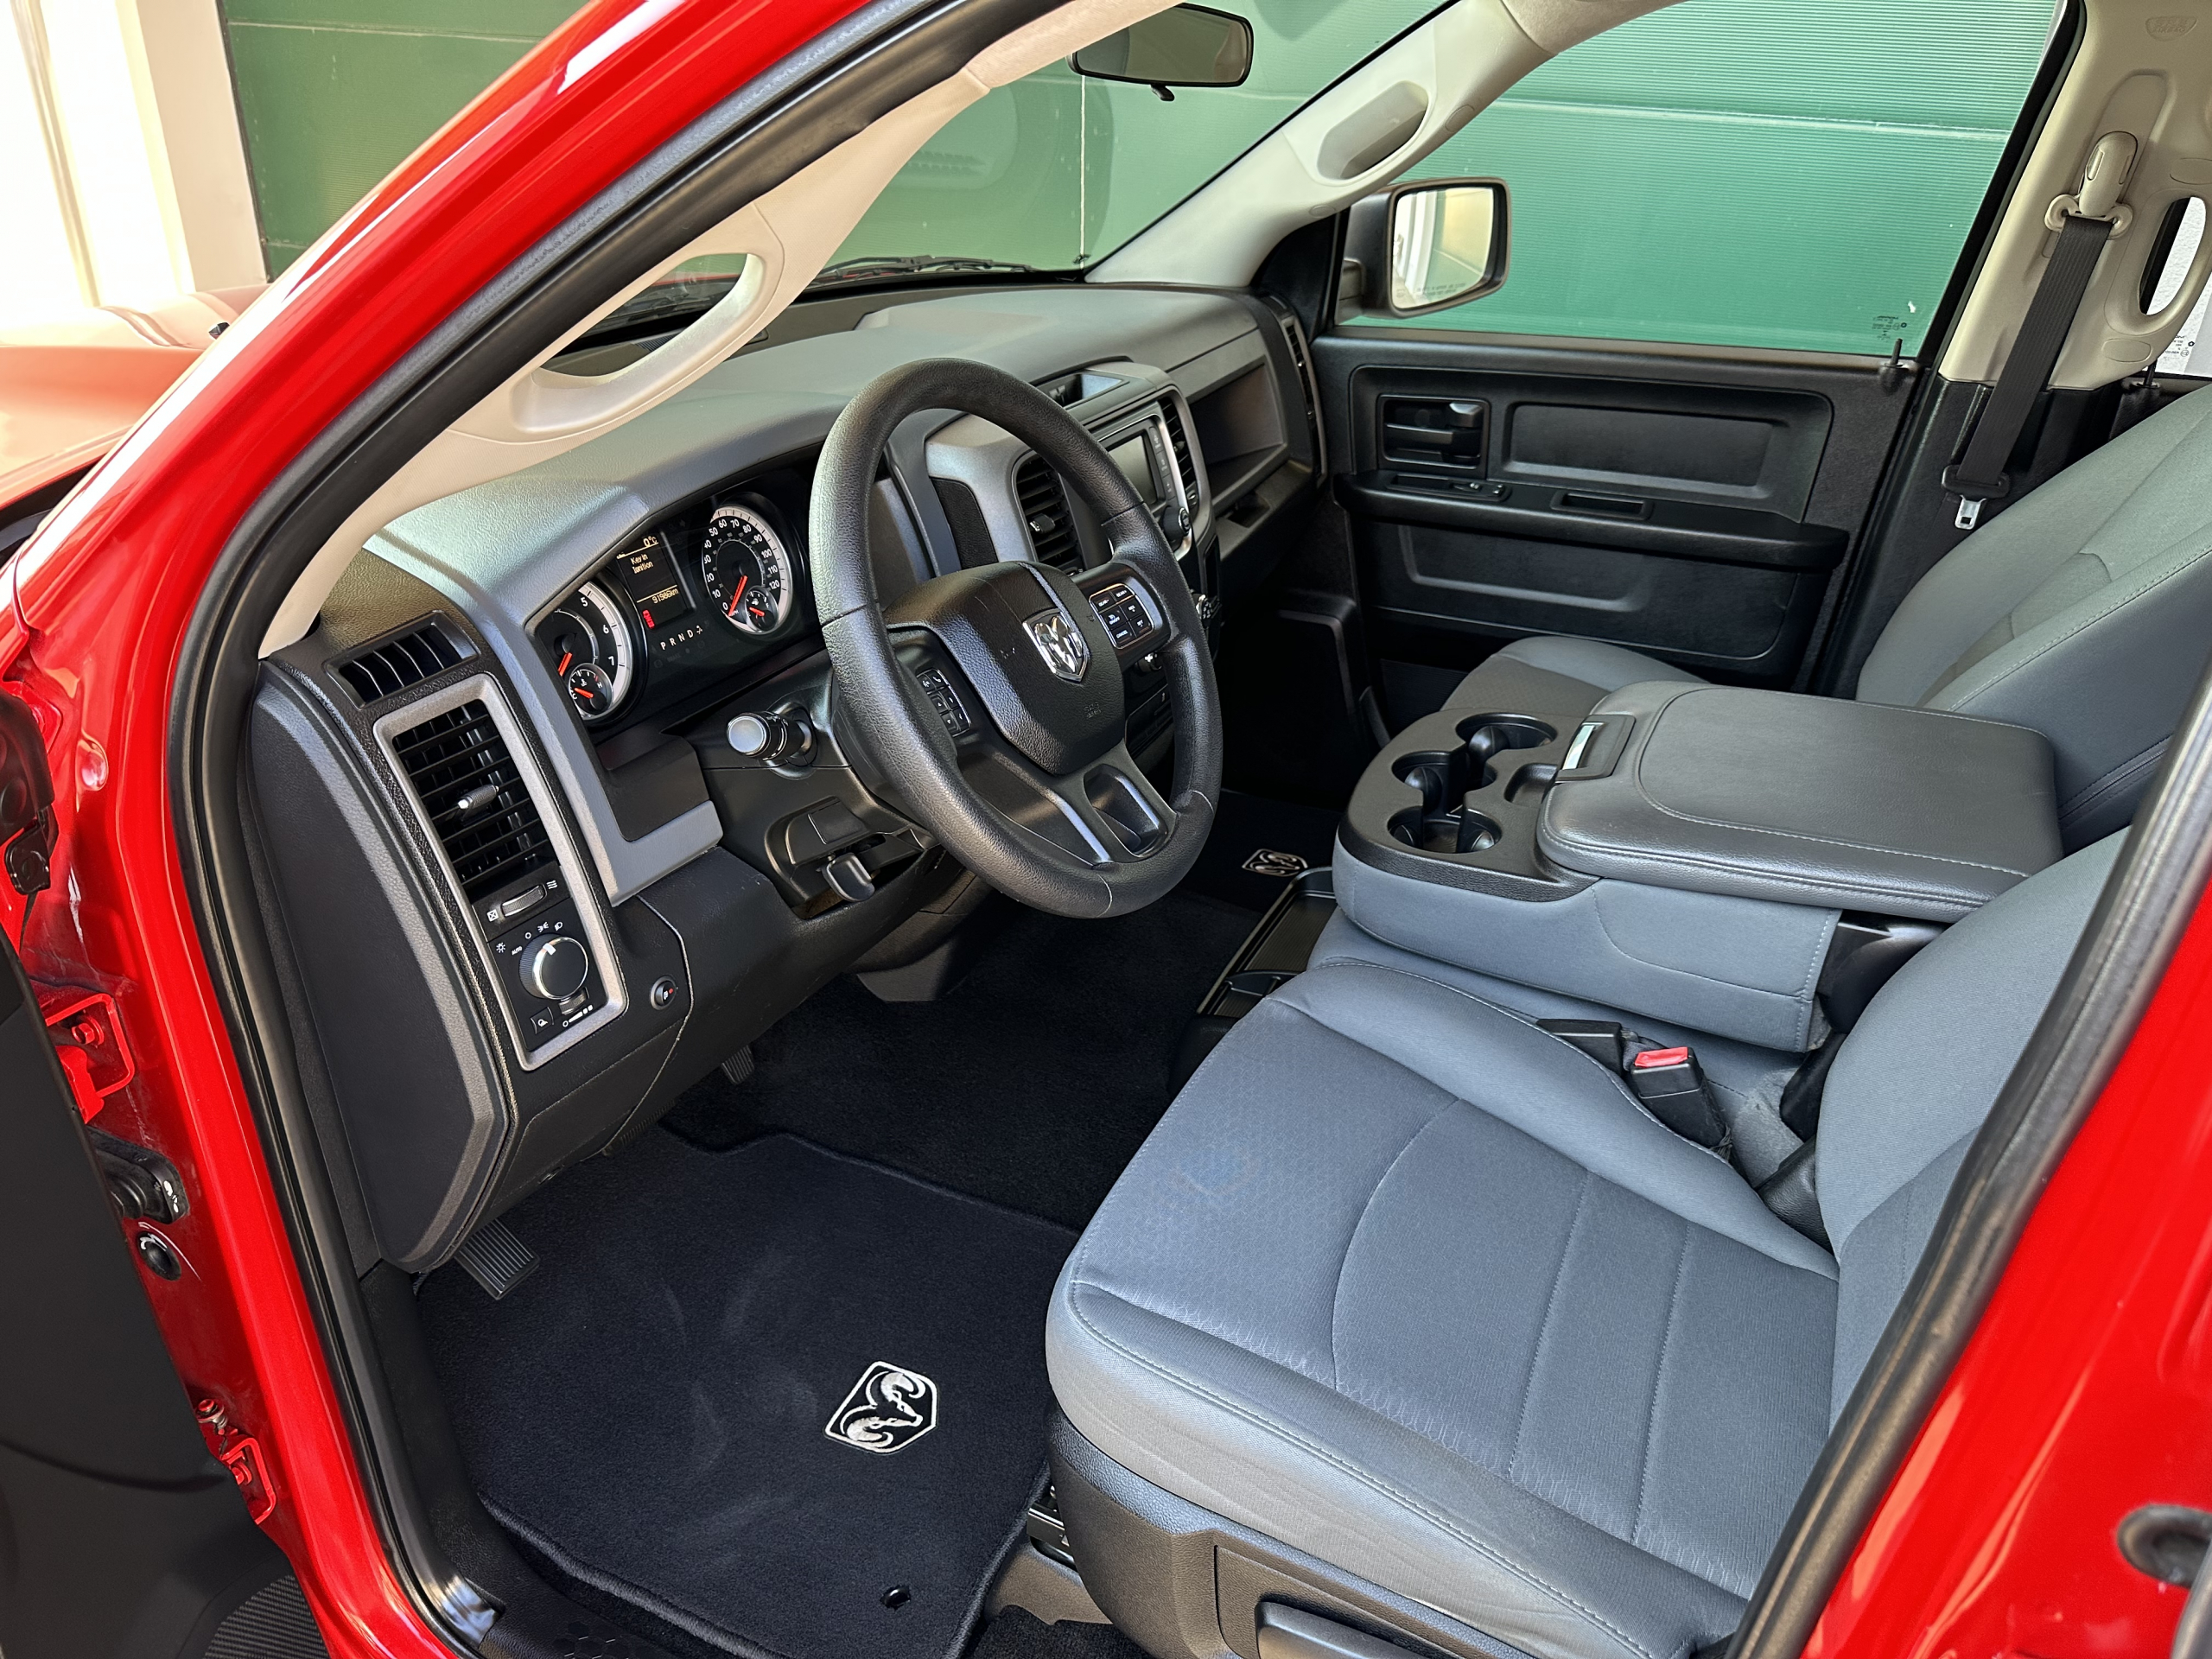 Dodge Ram 1500 Gen 4 d'occasion de 2017 à vendre, immatriculation UE en Allemagne